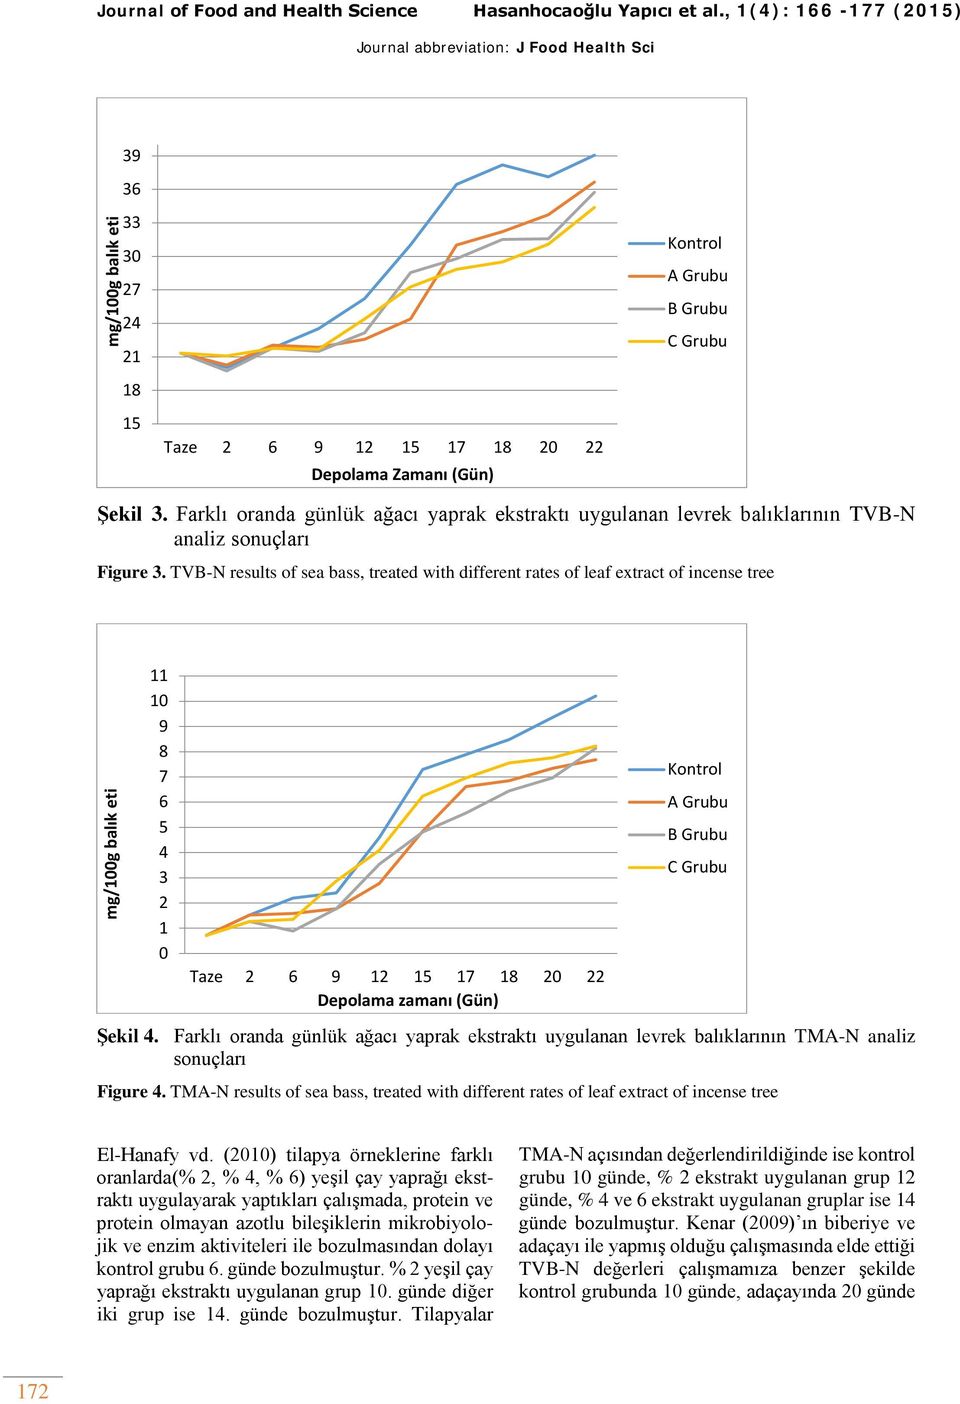 Farklı oranda günlük ağacı yaprak ekstraktı uygulanan levrek balıklarının TVB-N analiz sonuçları Figure 3.